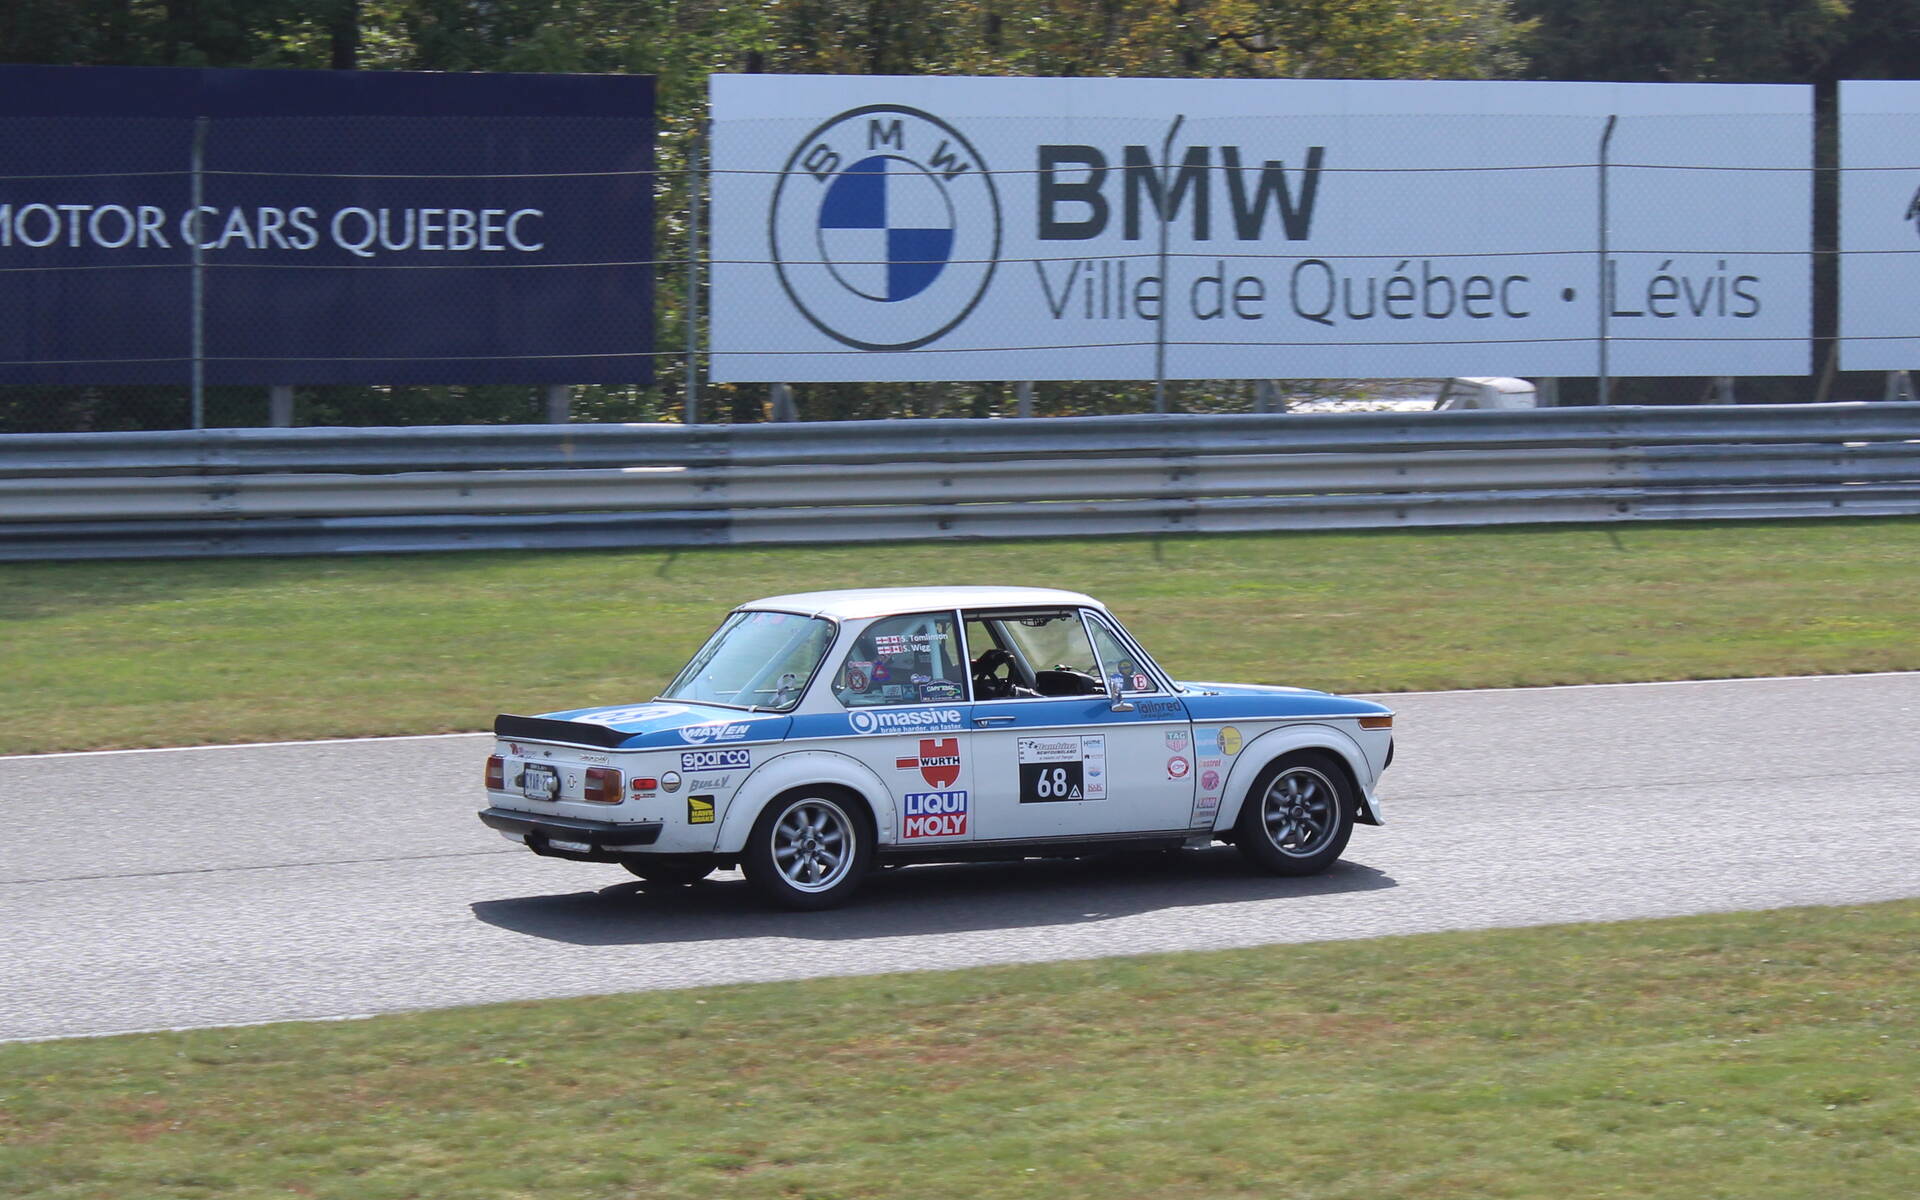 <p>Le paddock des voitures Vintage/historique</p>
<p>Photo : BMW 2002</p>